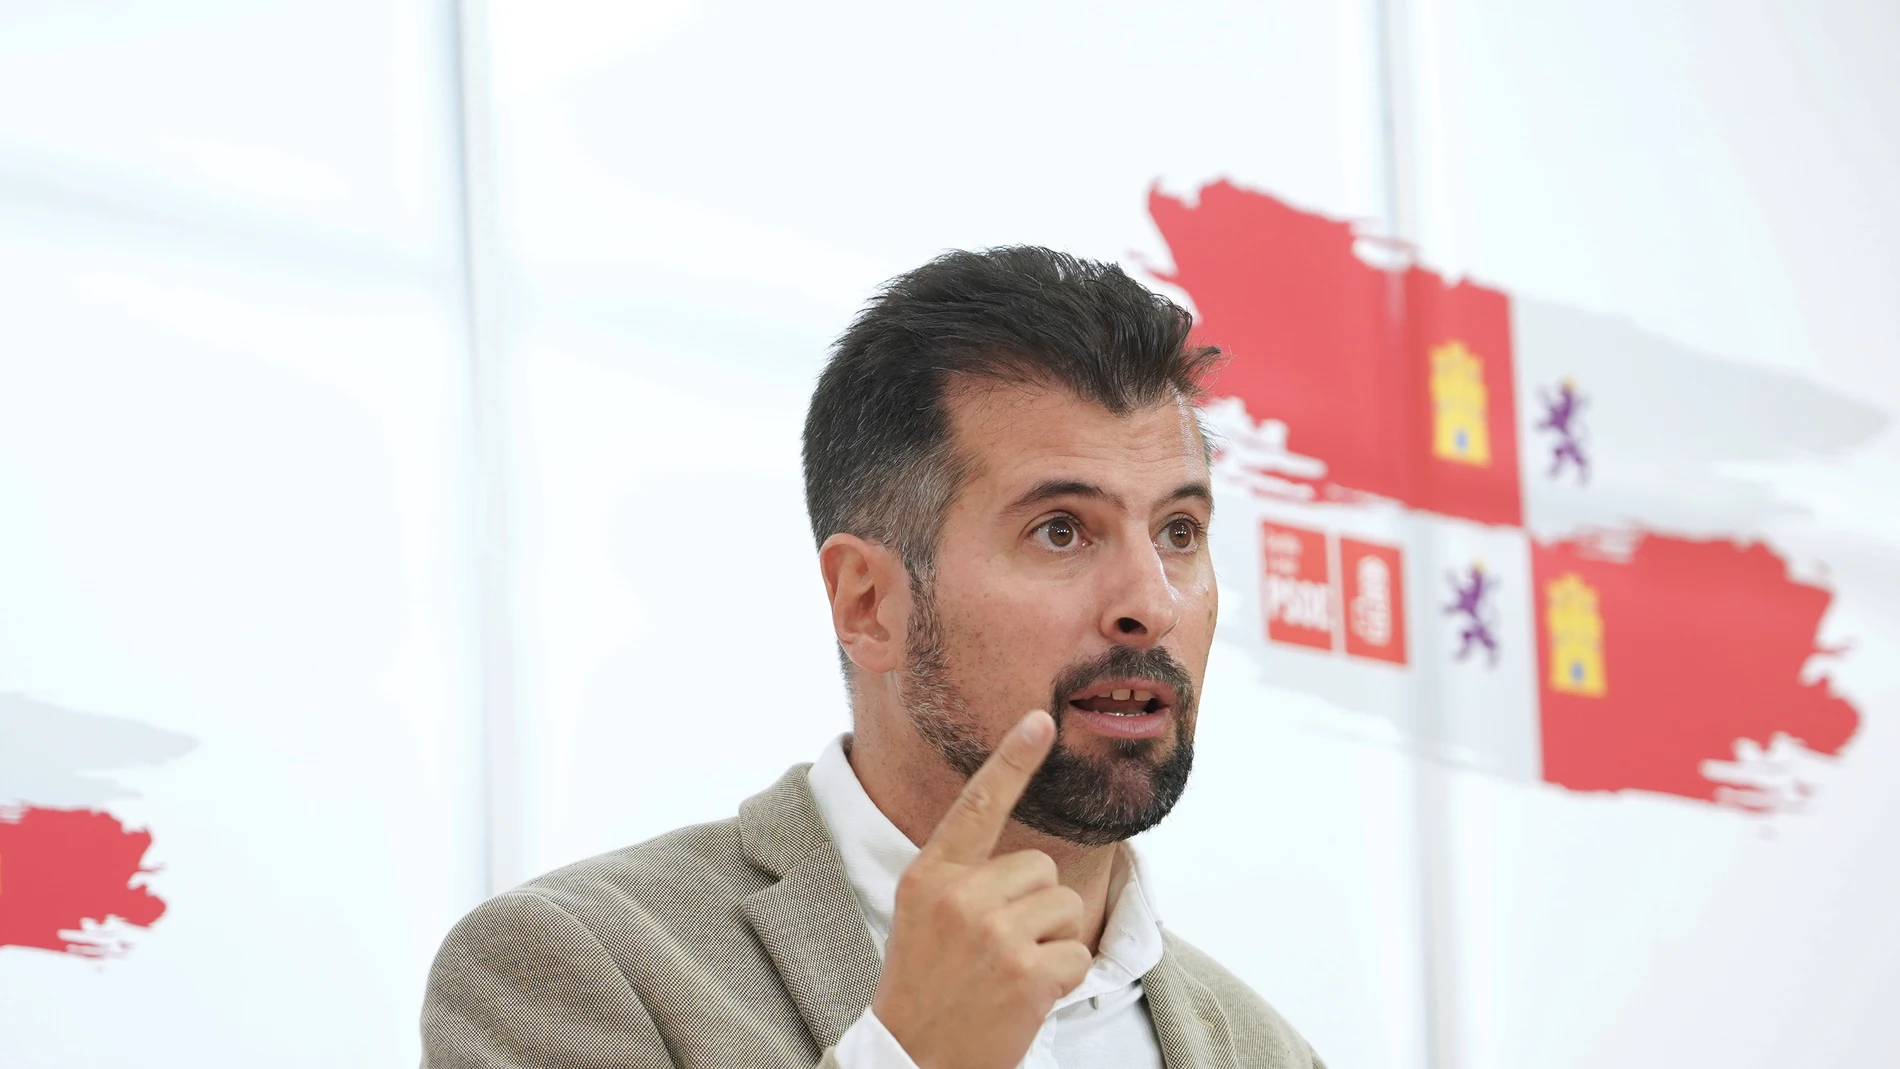 El secretario general del PSOECyL, Luis Tudanca, analiza diversos asuntos de actualidad política de Castilla y León